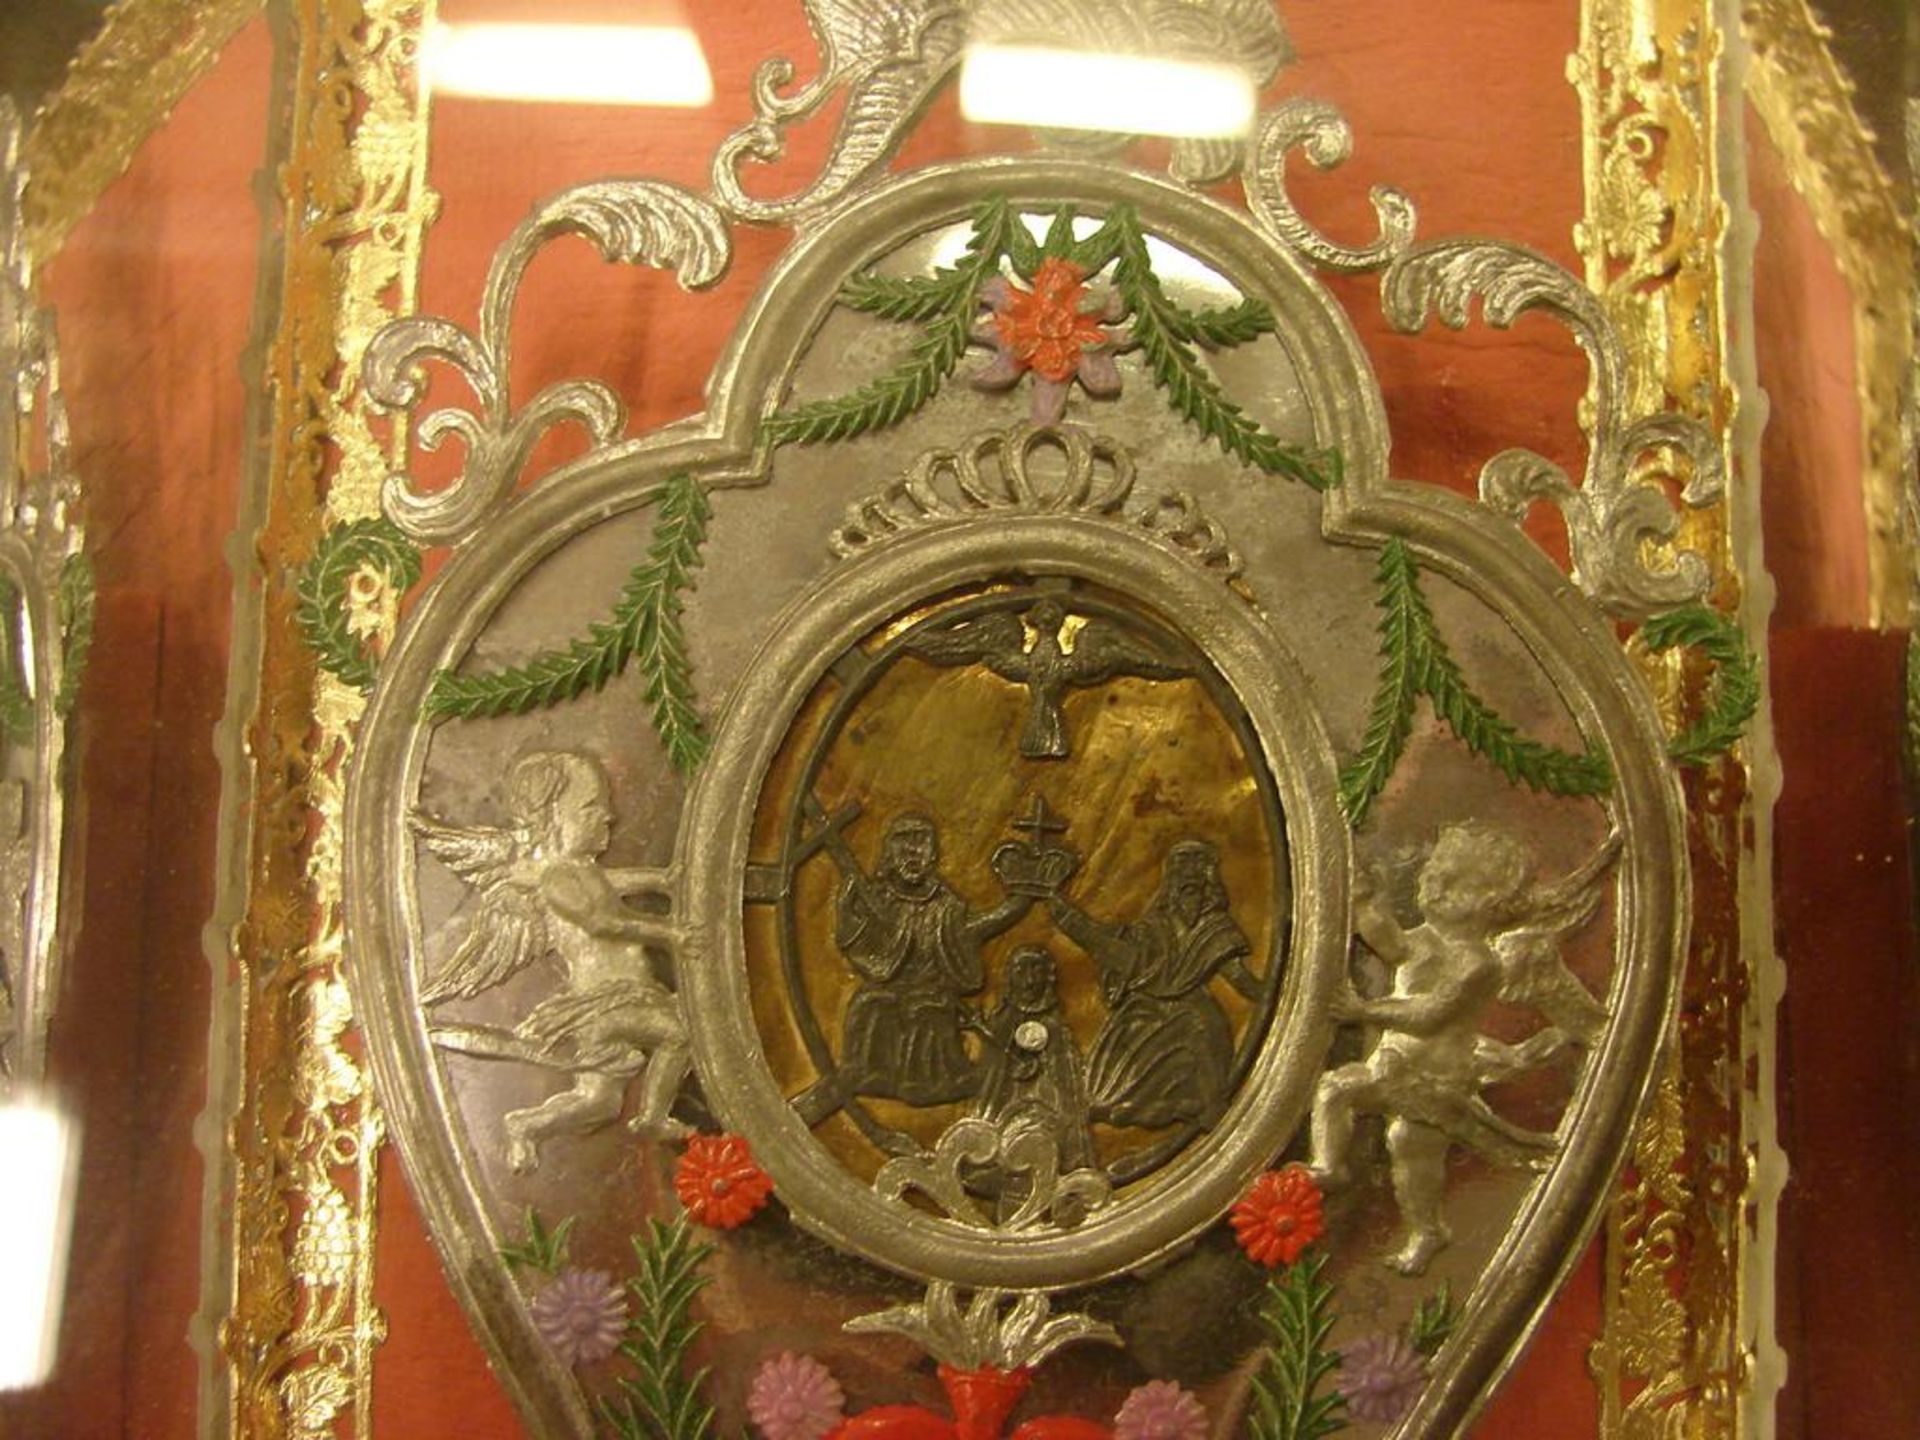 Klosterarbeit, versilberte Darstellung, Blumenschmuck, dat. 1903, im Rahmen, ca. 26 x 18 cm- - -22. - Bild 2 aus 2